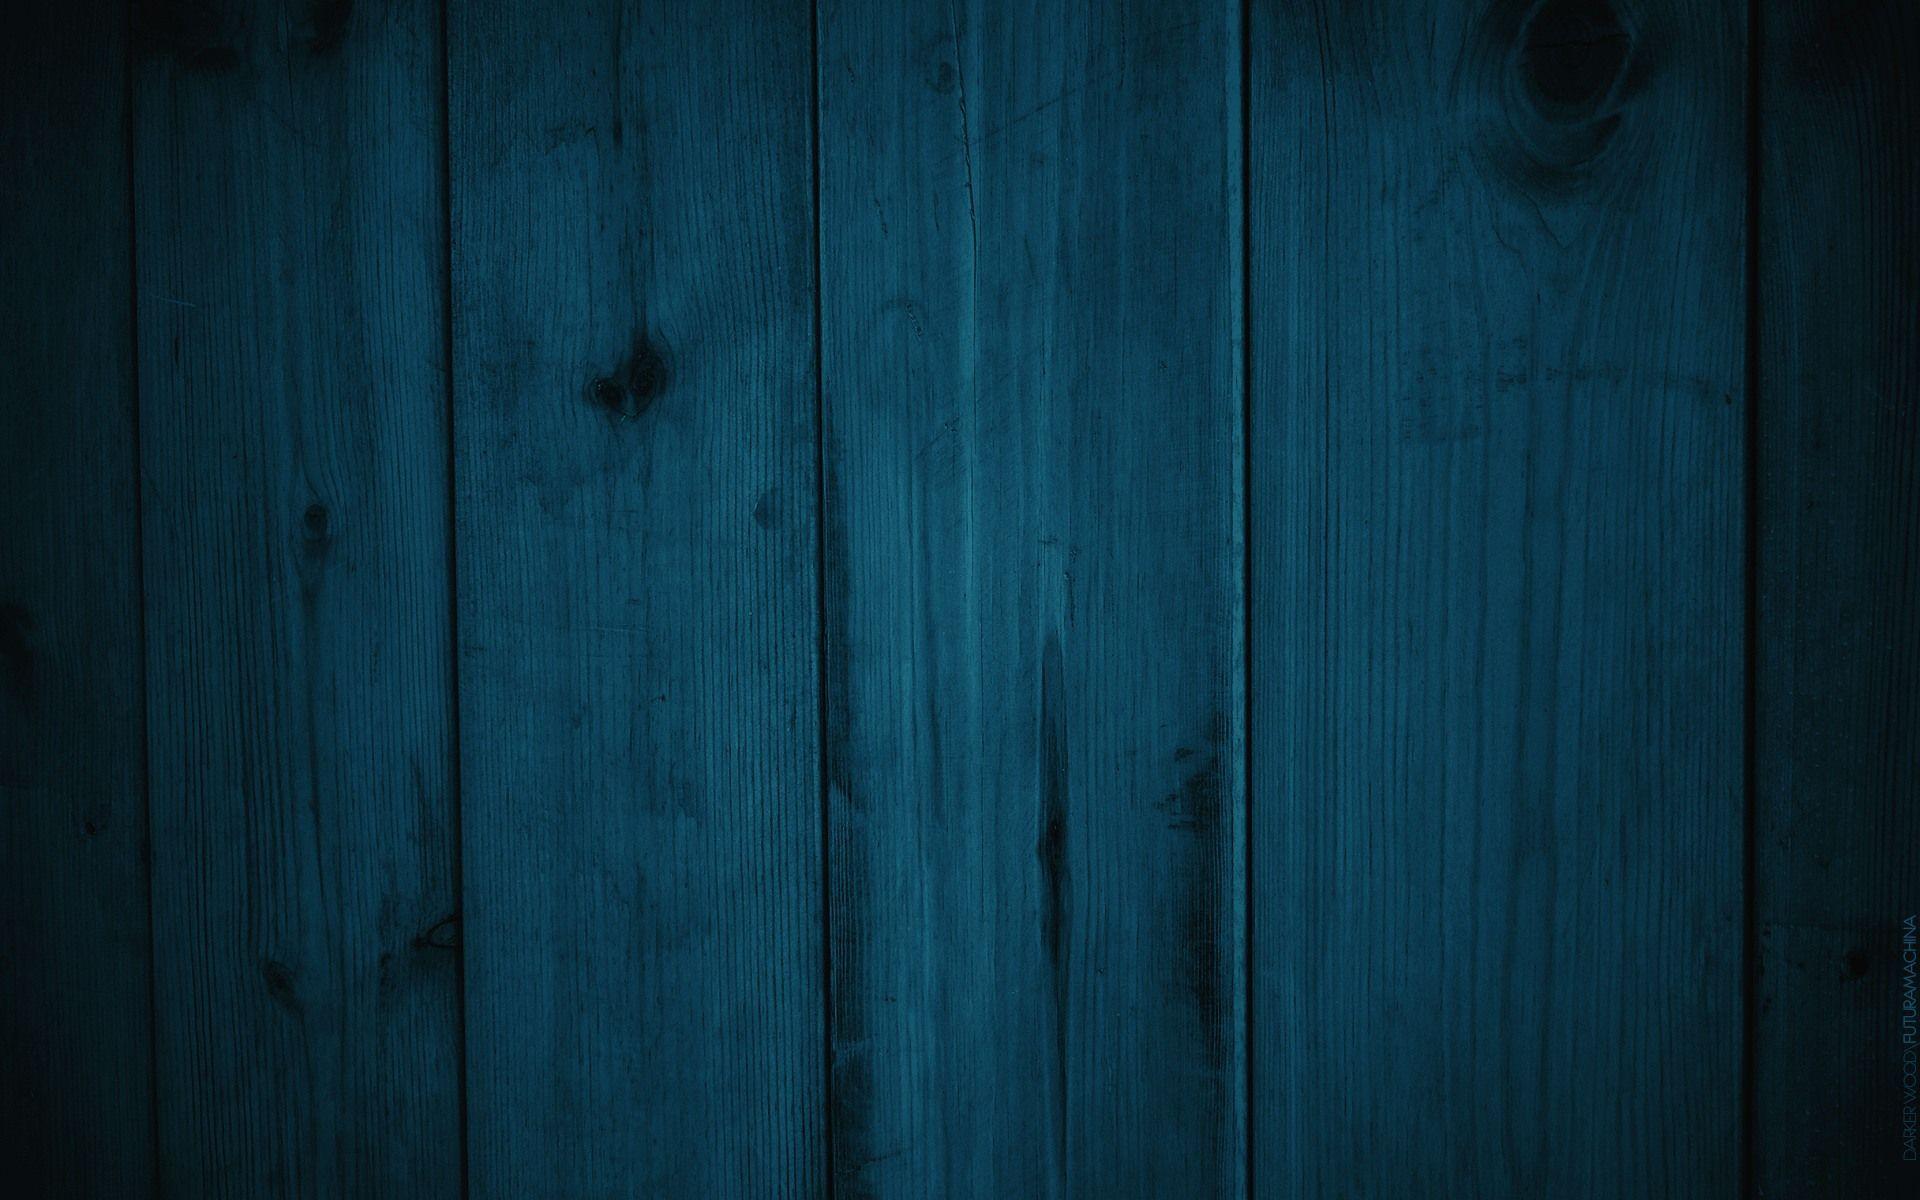 Hình nền gỗ màu xanh navy đậm sẽ khiến cho bức ảnh của bạn trở nên sang trọng hơn bao giờ hết. Sắc màu đậm chất lượng cùng với chất liệu gỗ kết hợp tạo nên một nền tảng hoàn hảo cho bất kỳ loại hình ảnh nào.